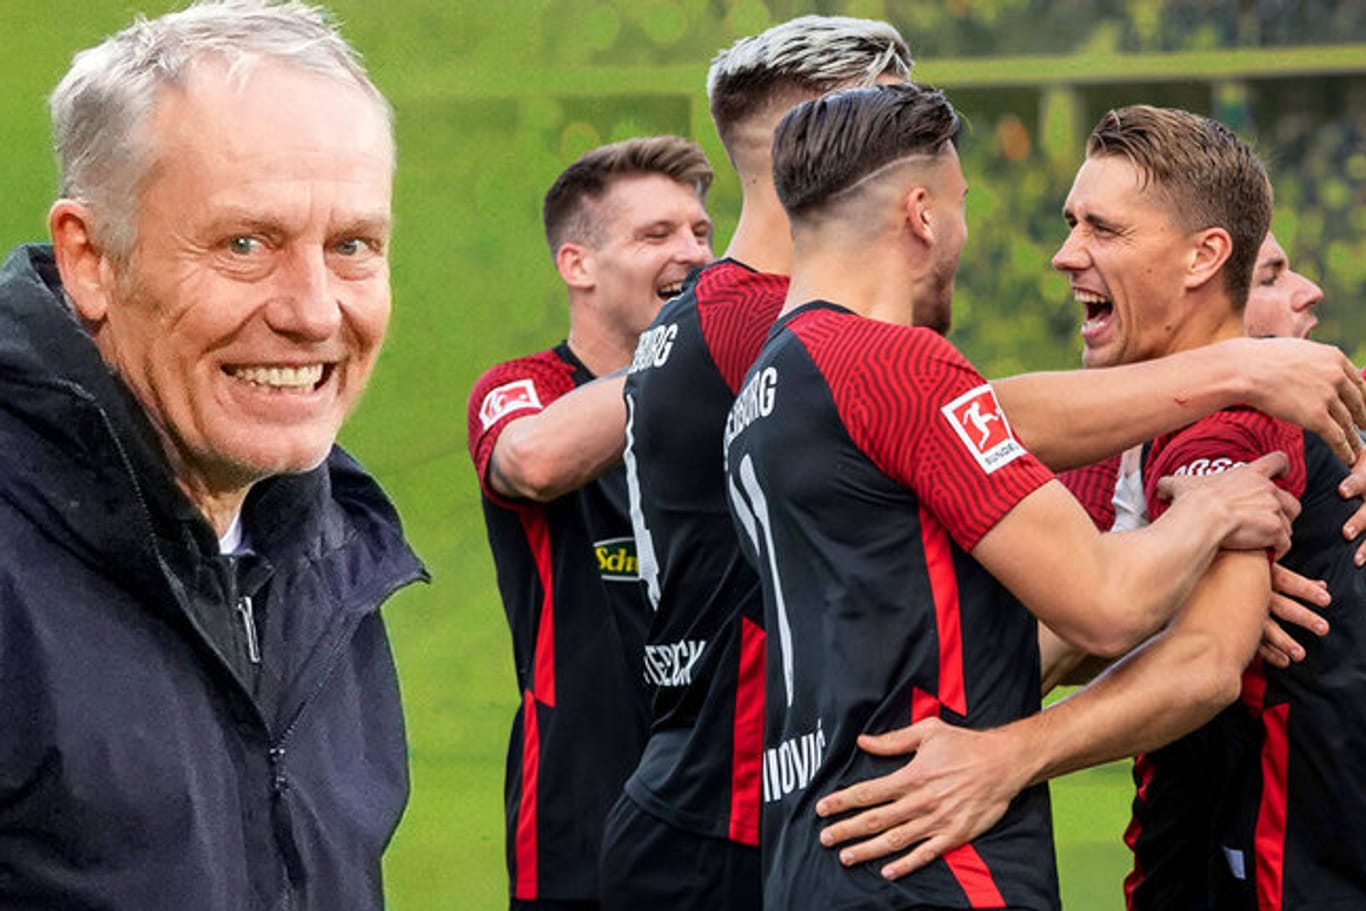 Jubel bei den Freiburgern und ein glücklicher Trainer Christian Streich: Das Team ist bisher in der Liga noch ungeschlagen.